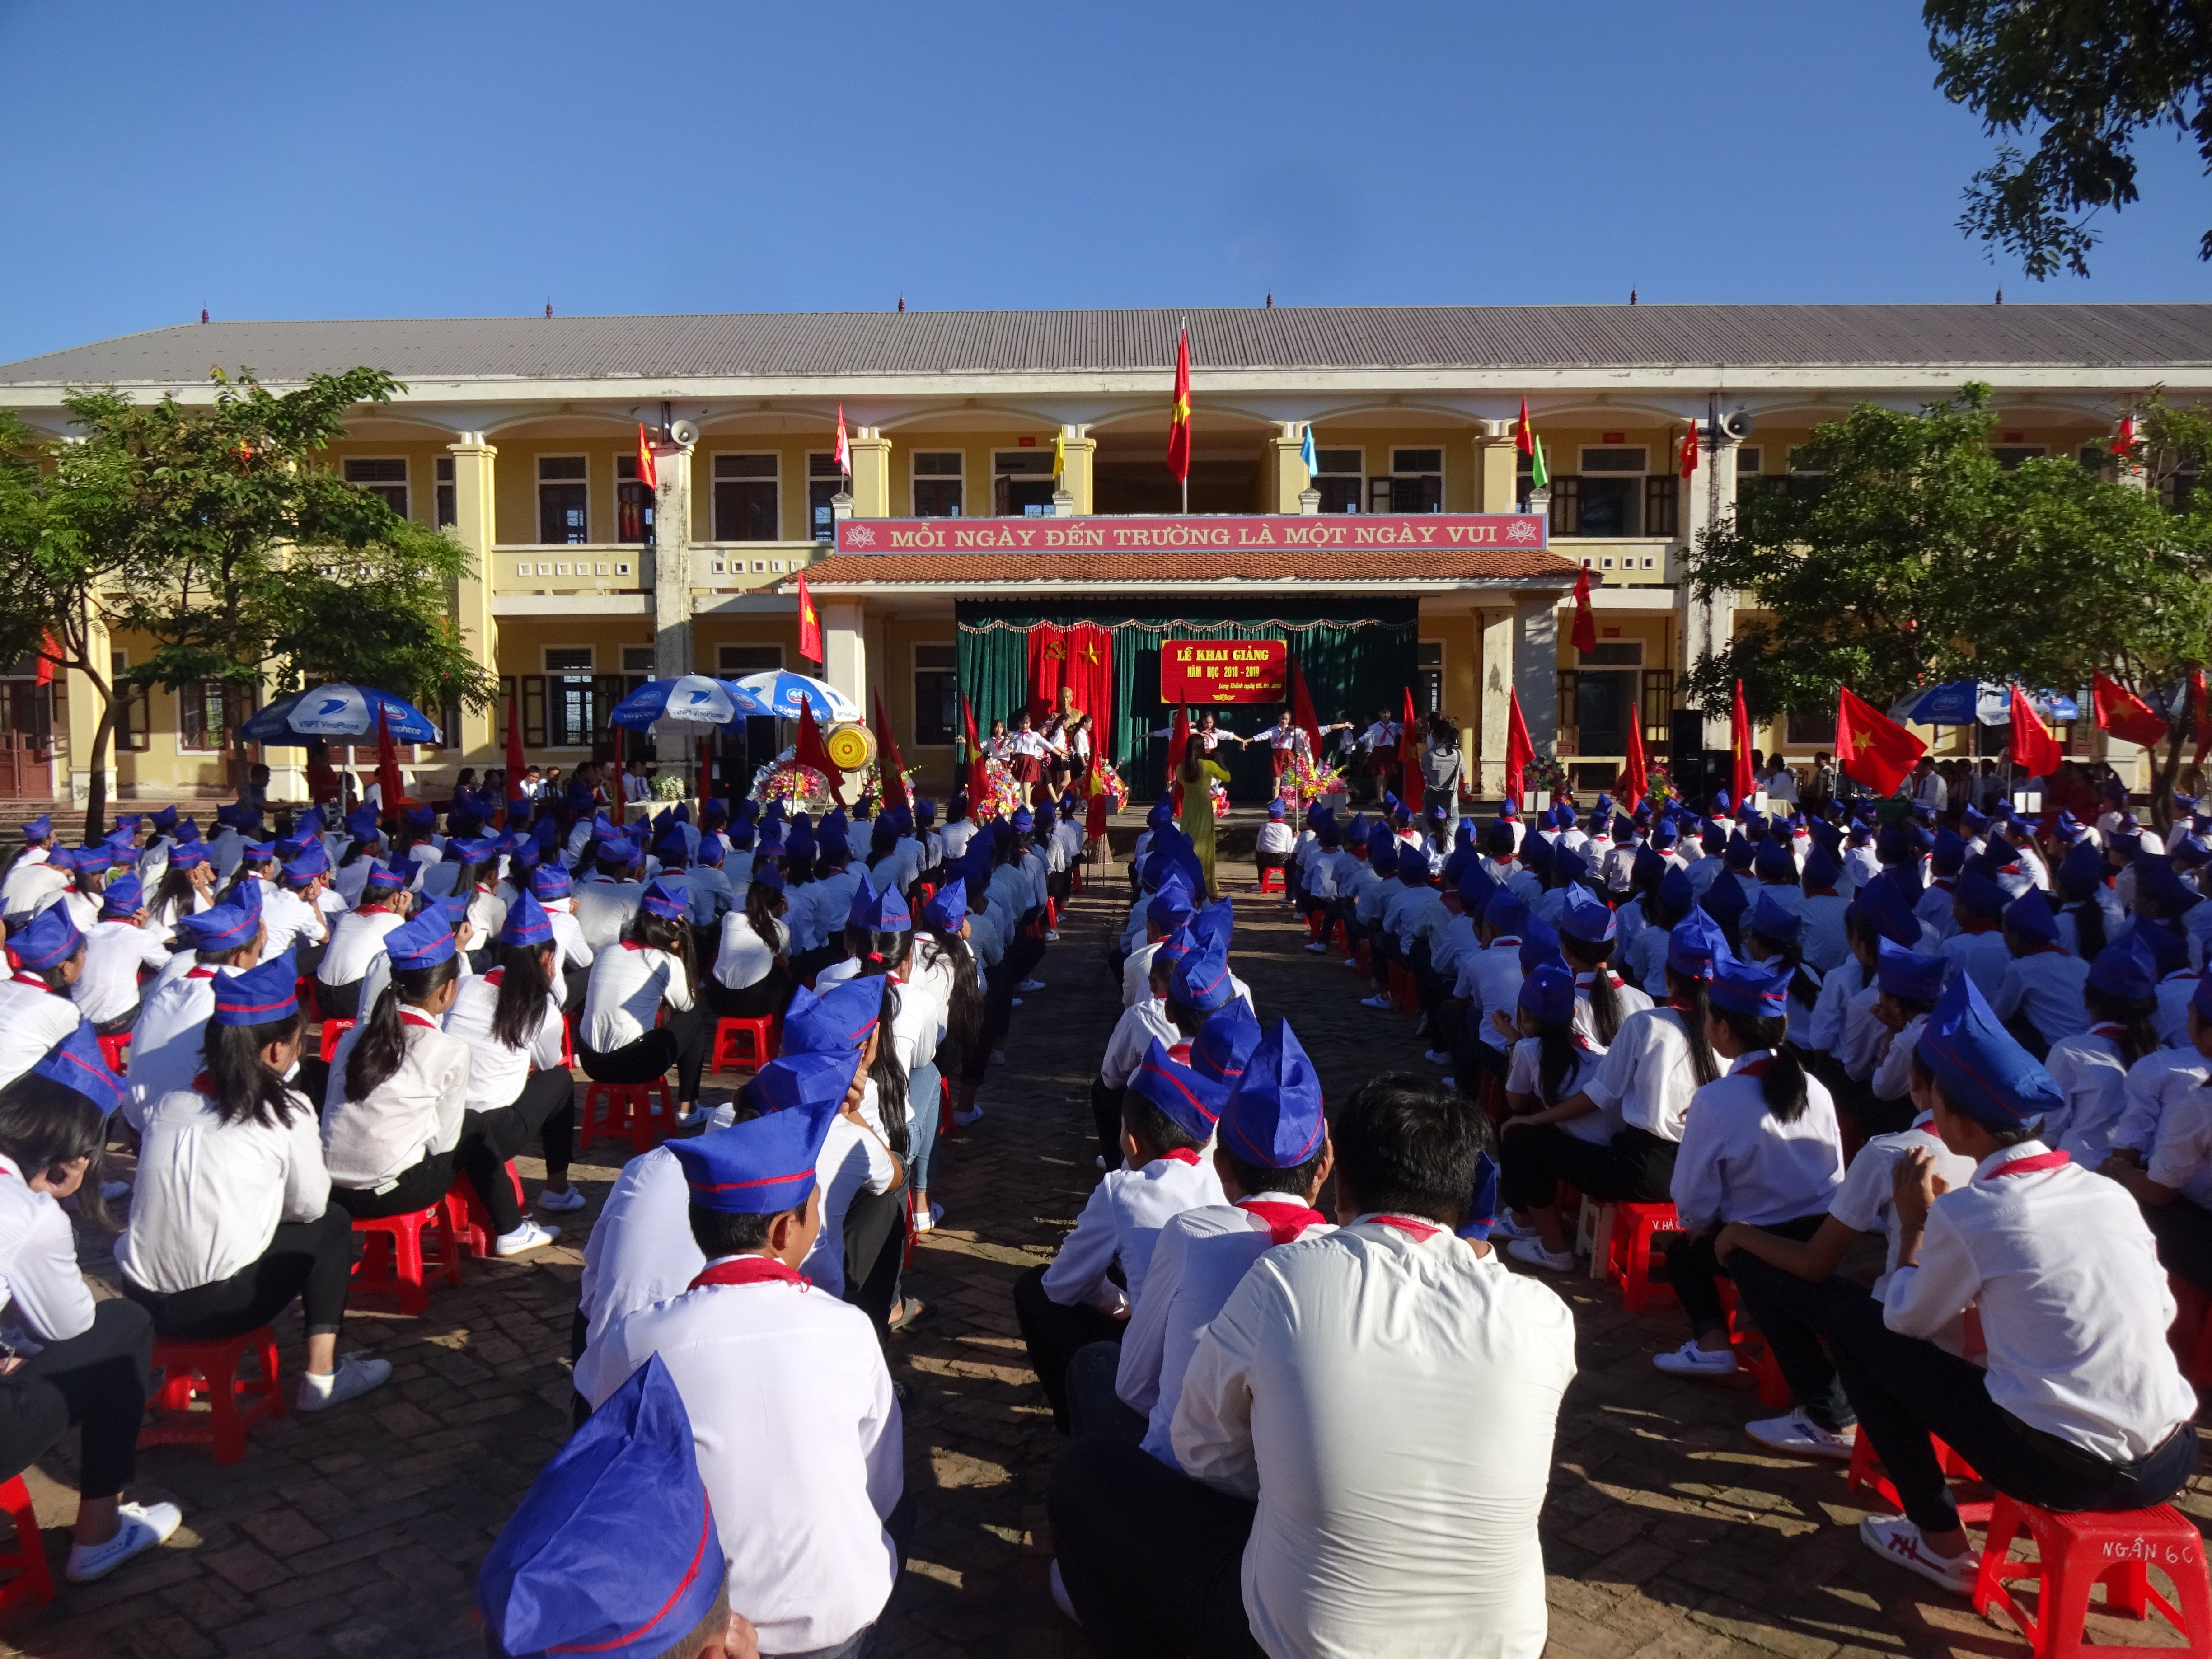 Toàn cảnh lễ khai giảng tại trường Long Thành - Yên Thành. Ảnh: Thái Hồng